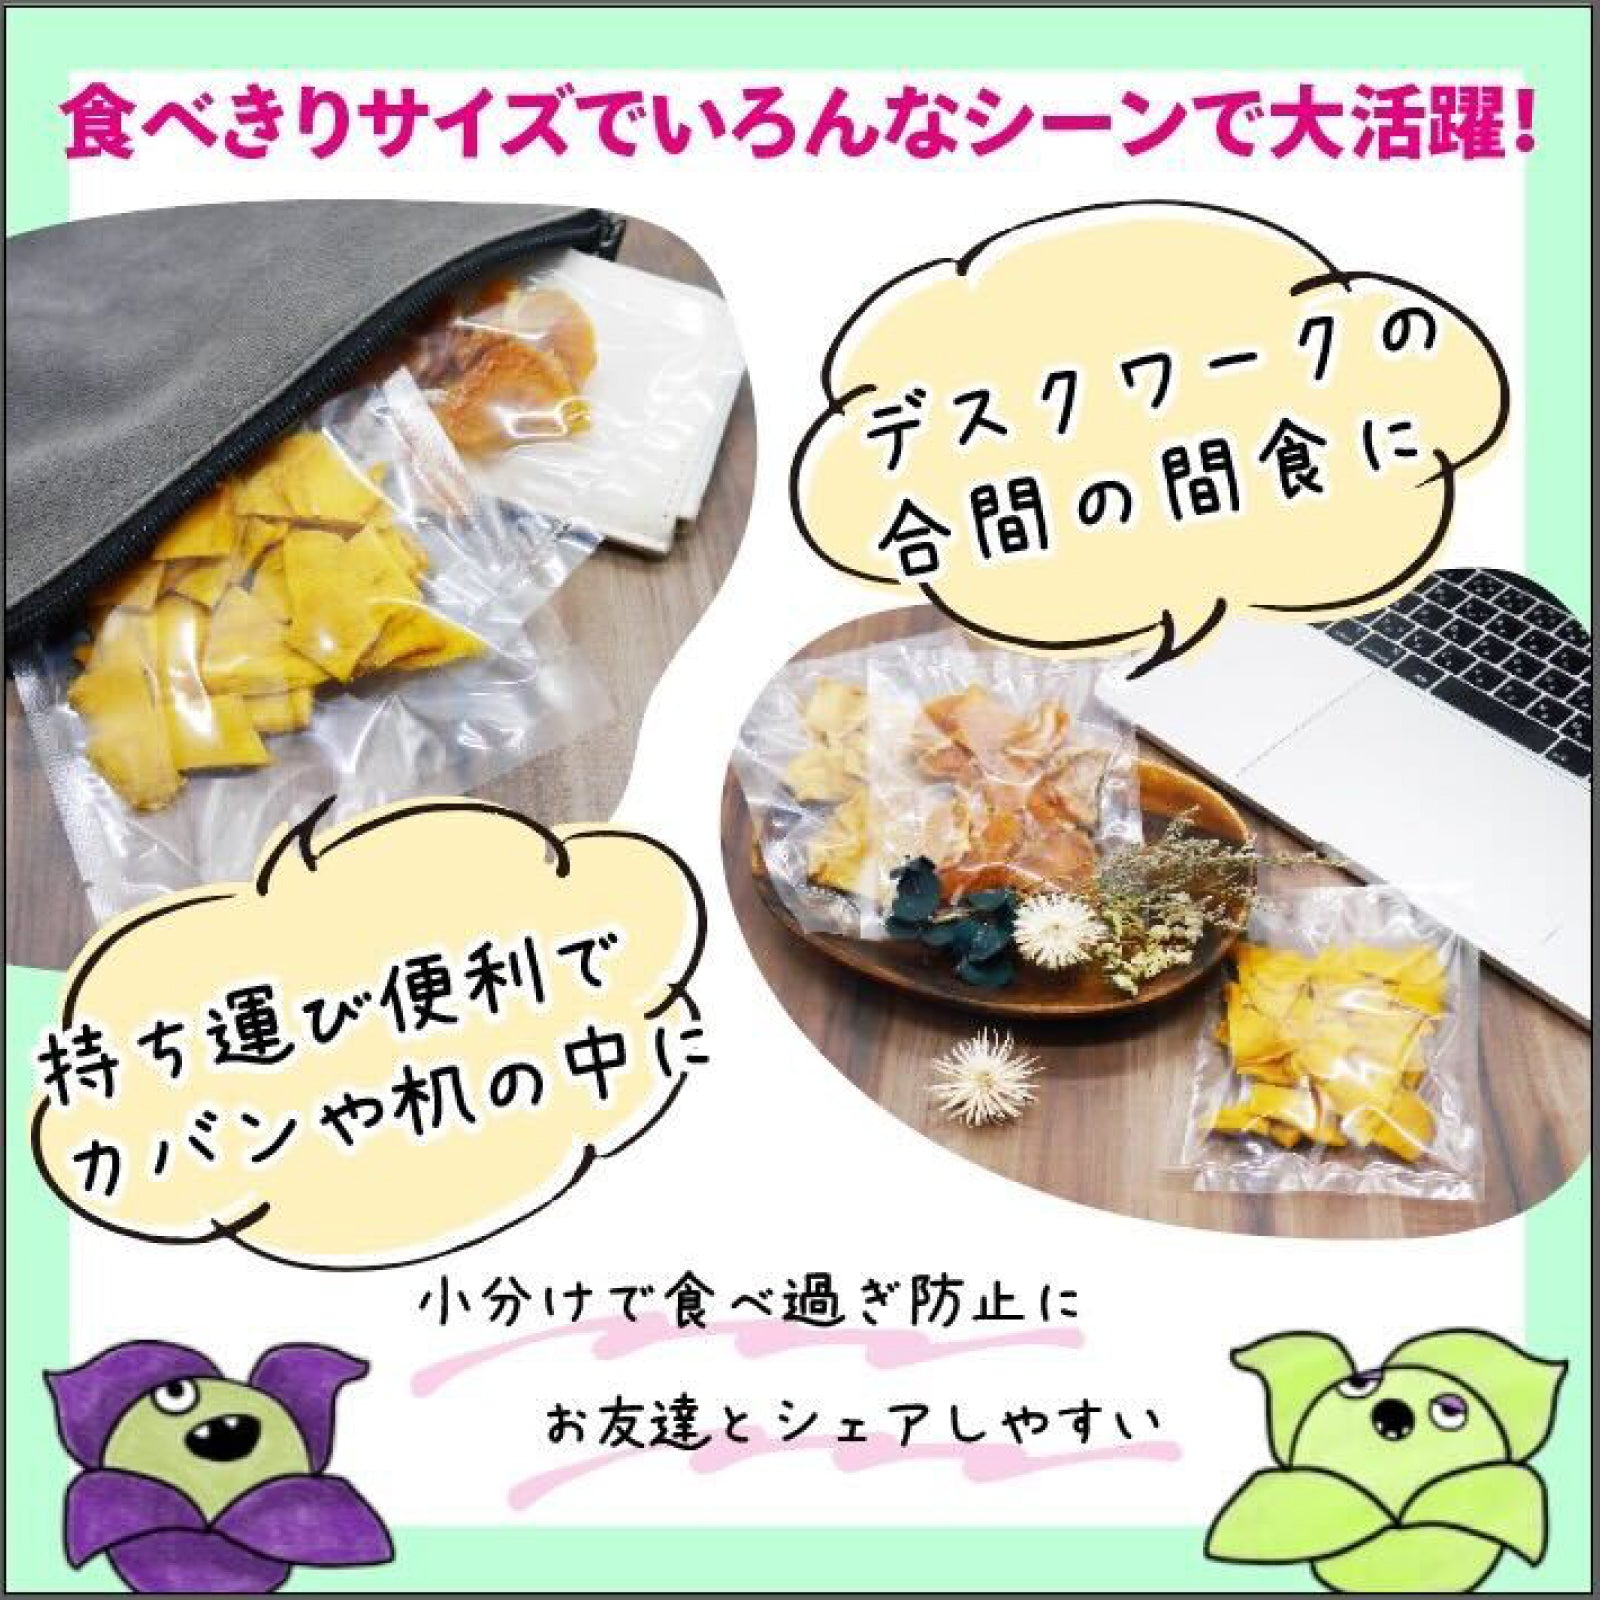 【無添加・砂糖不使用】ドライパイナップル & マンゴー 12袋（40g × 各6袋）